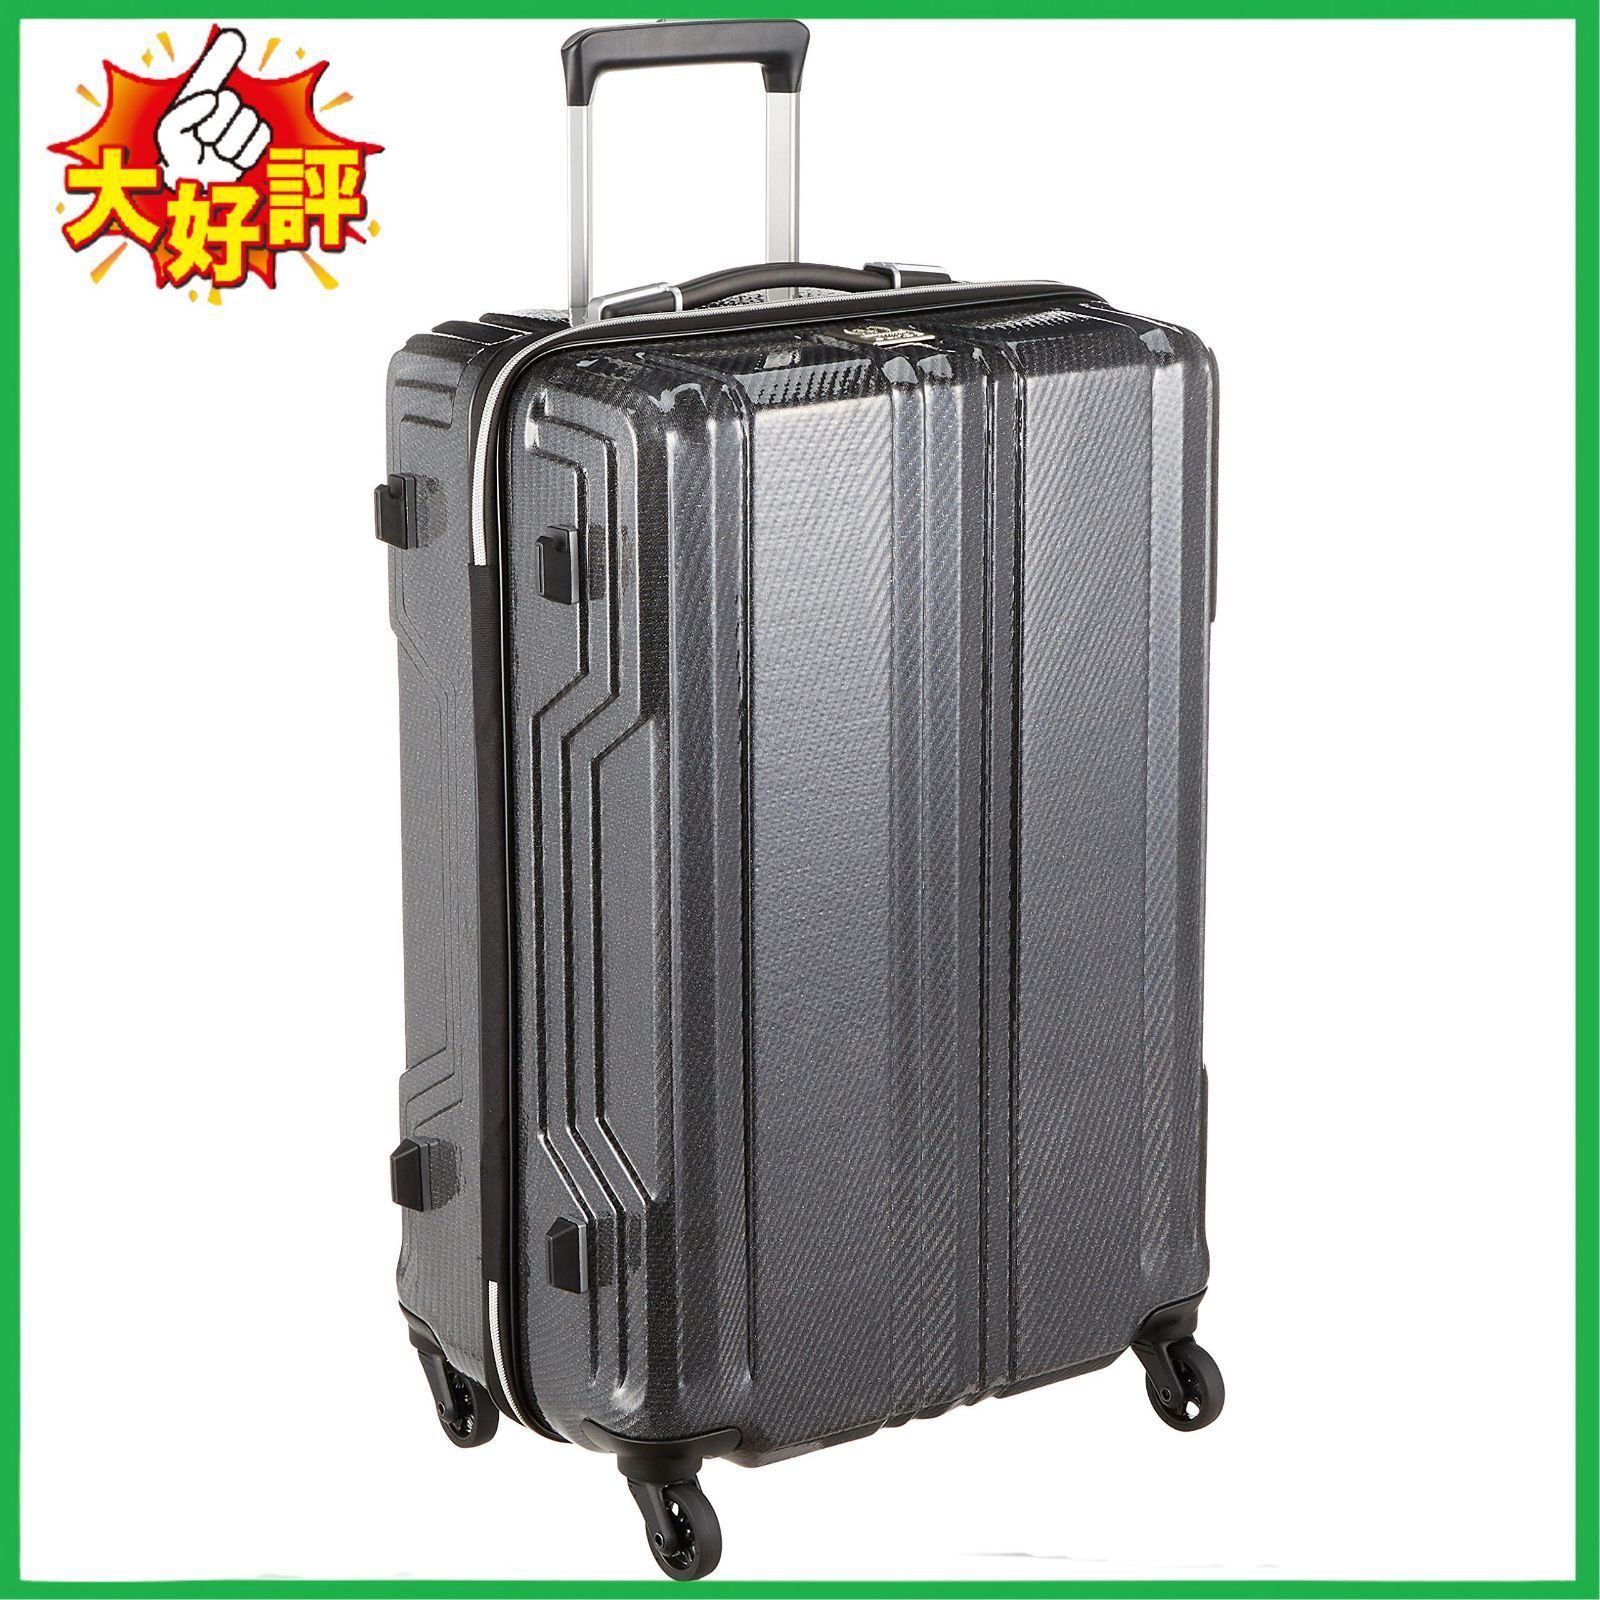 □レジェンドウォーカー スーツケース 新素材PCファイバー採用 付 57L 59 cm 2.9kg